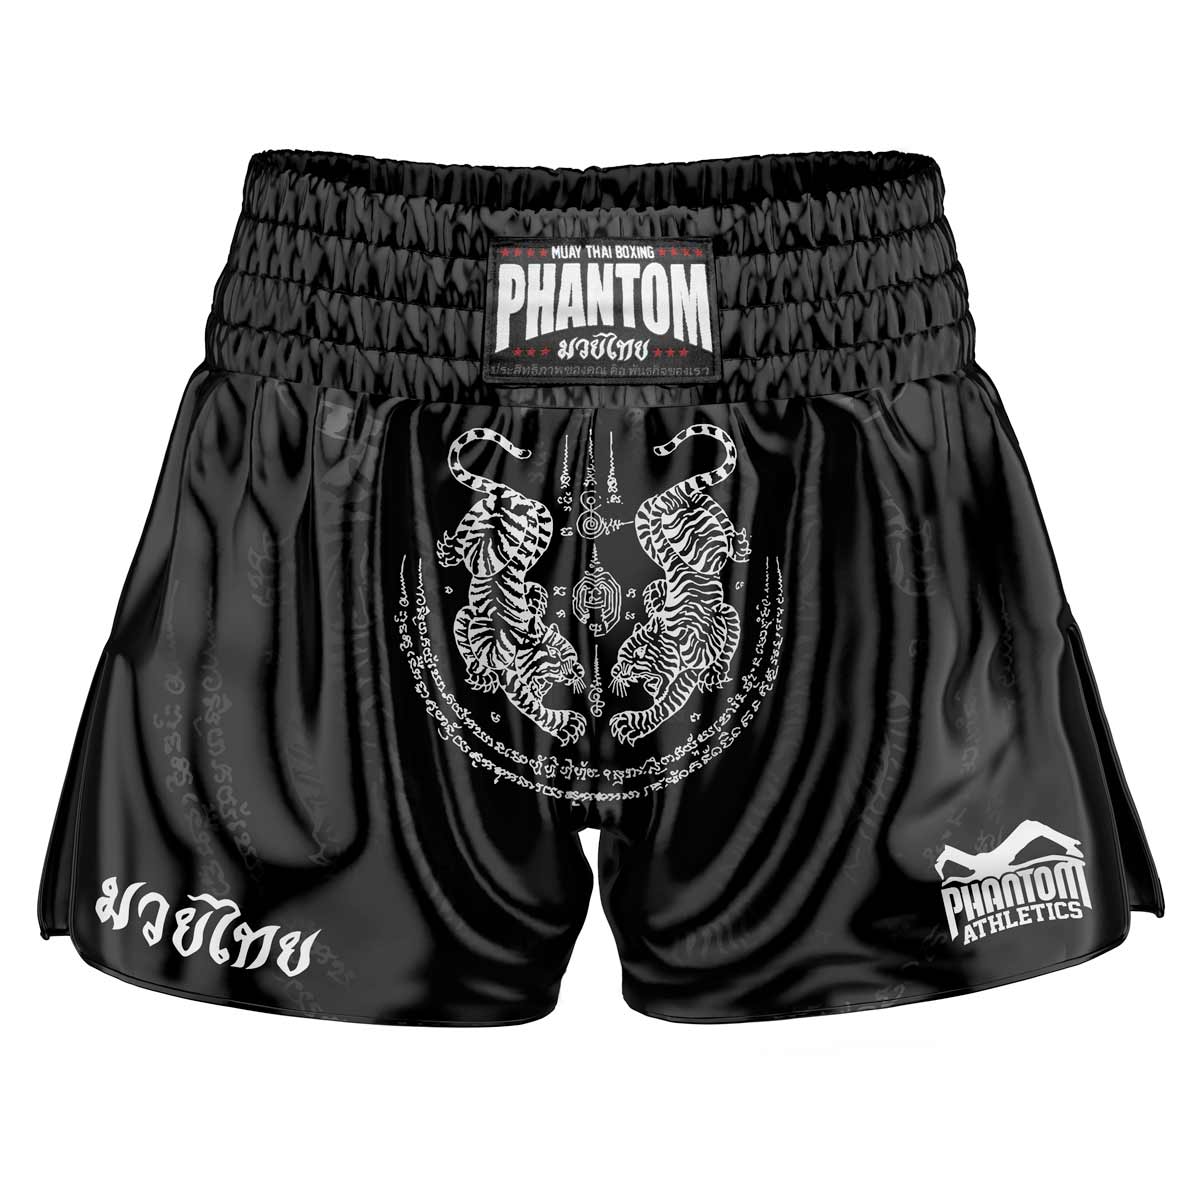 Phantom Muay Thai shorts SAK YANT i svart. Old school satintyg med traditionell tigerdesign ger dig en original thailändsk känsla. I vanlig Phantom Athletics kvalitet. Perfekt för din thaiboxningsträning och tävling.